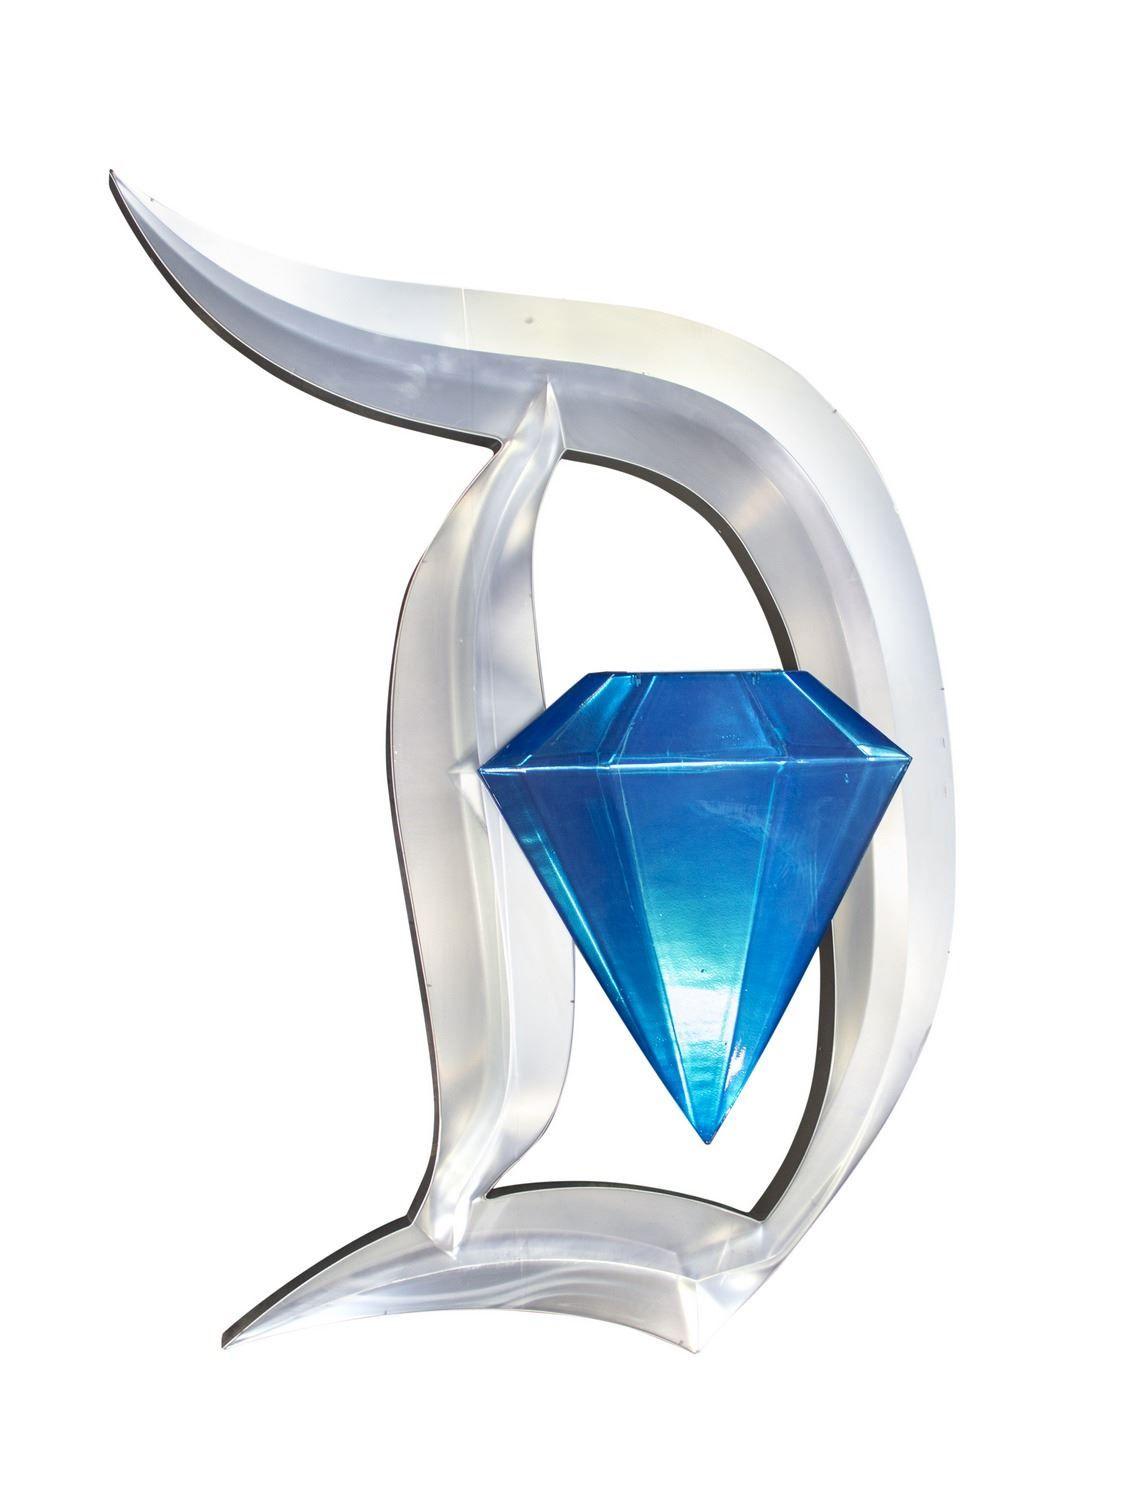 Large Diamond Logo - Large Diamond Celebration Logo Sign